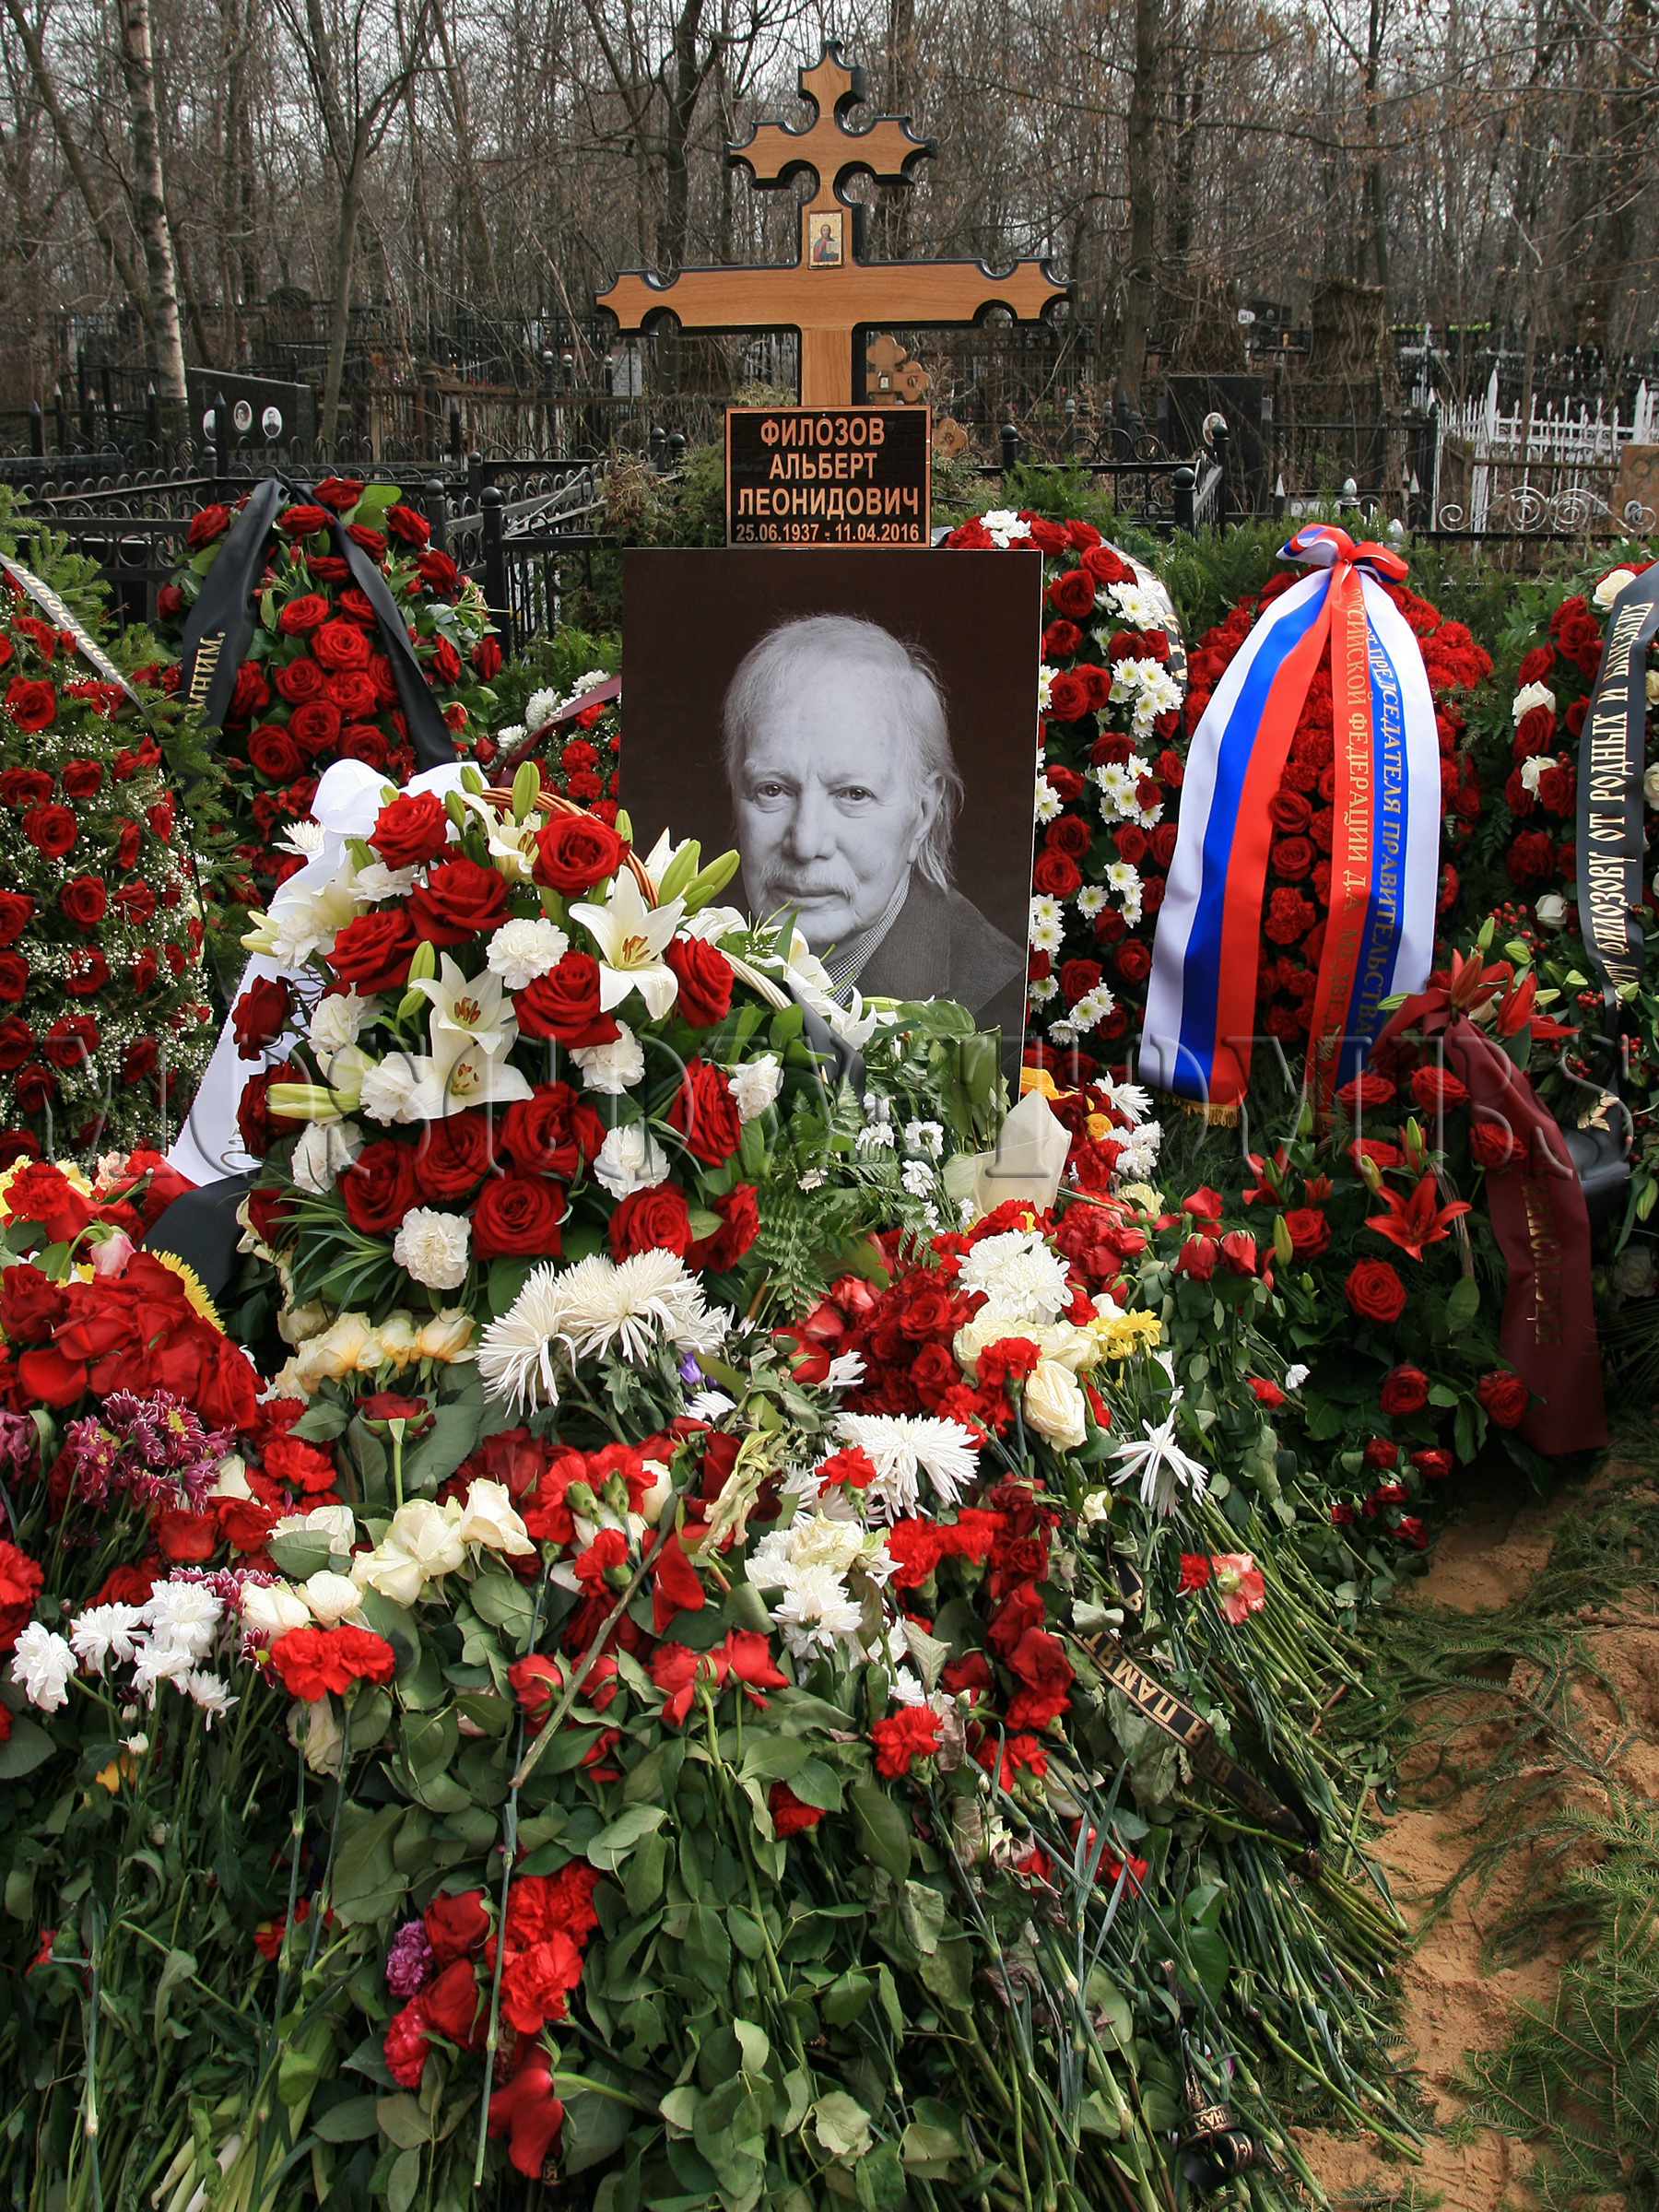 Кладбище похороненных актеров. Могила Виталия Соломина на Ваганьковском кладбище. Филозов могила.